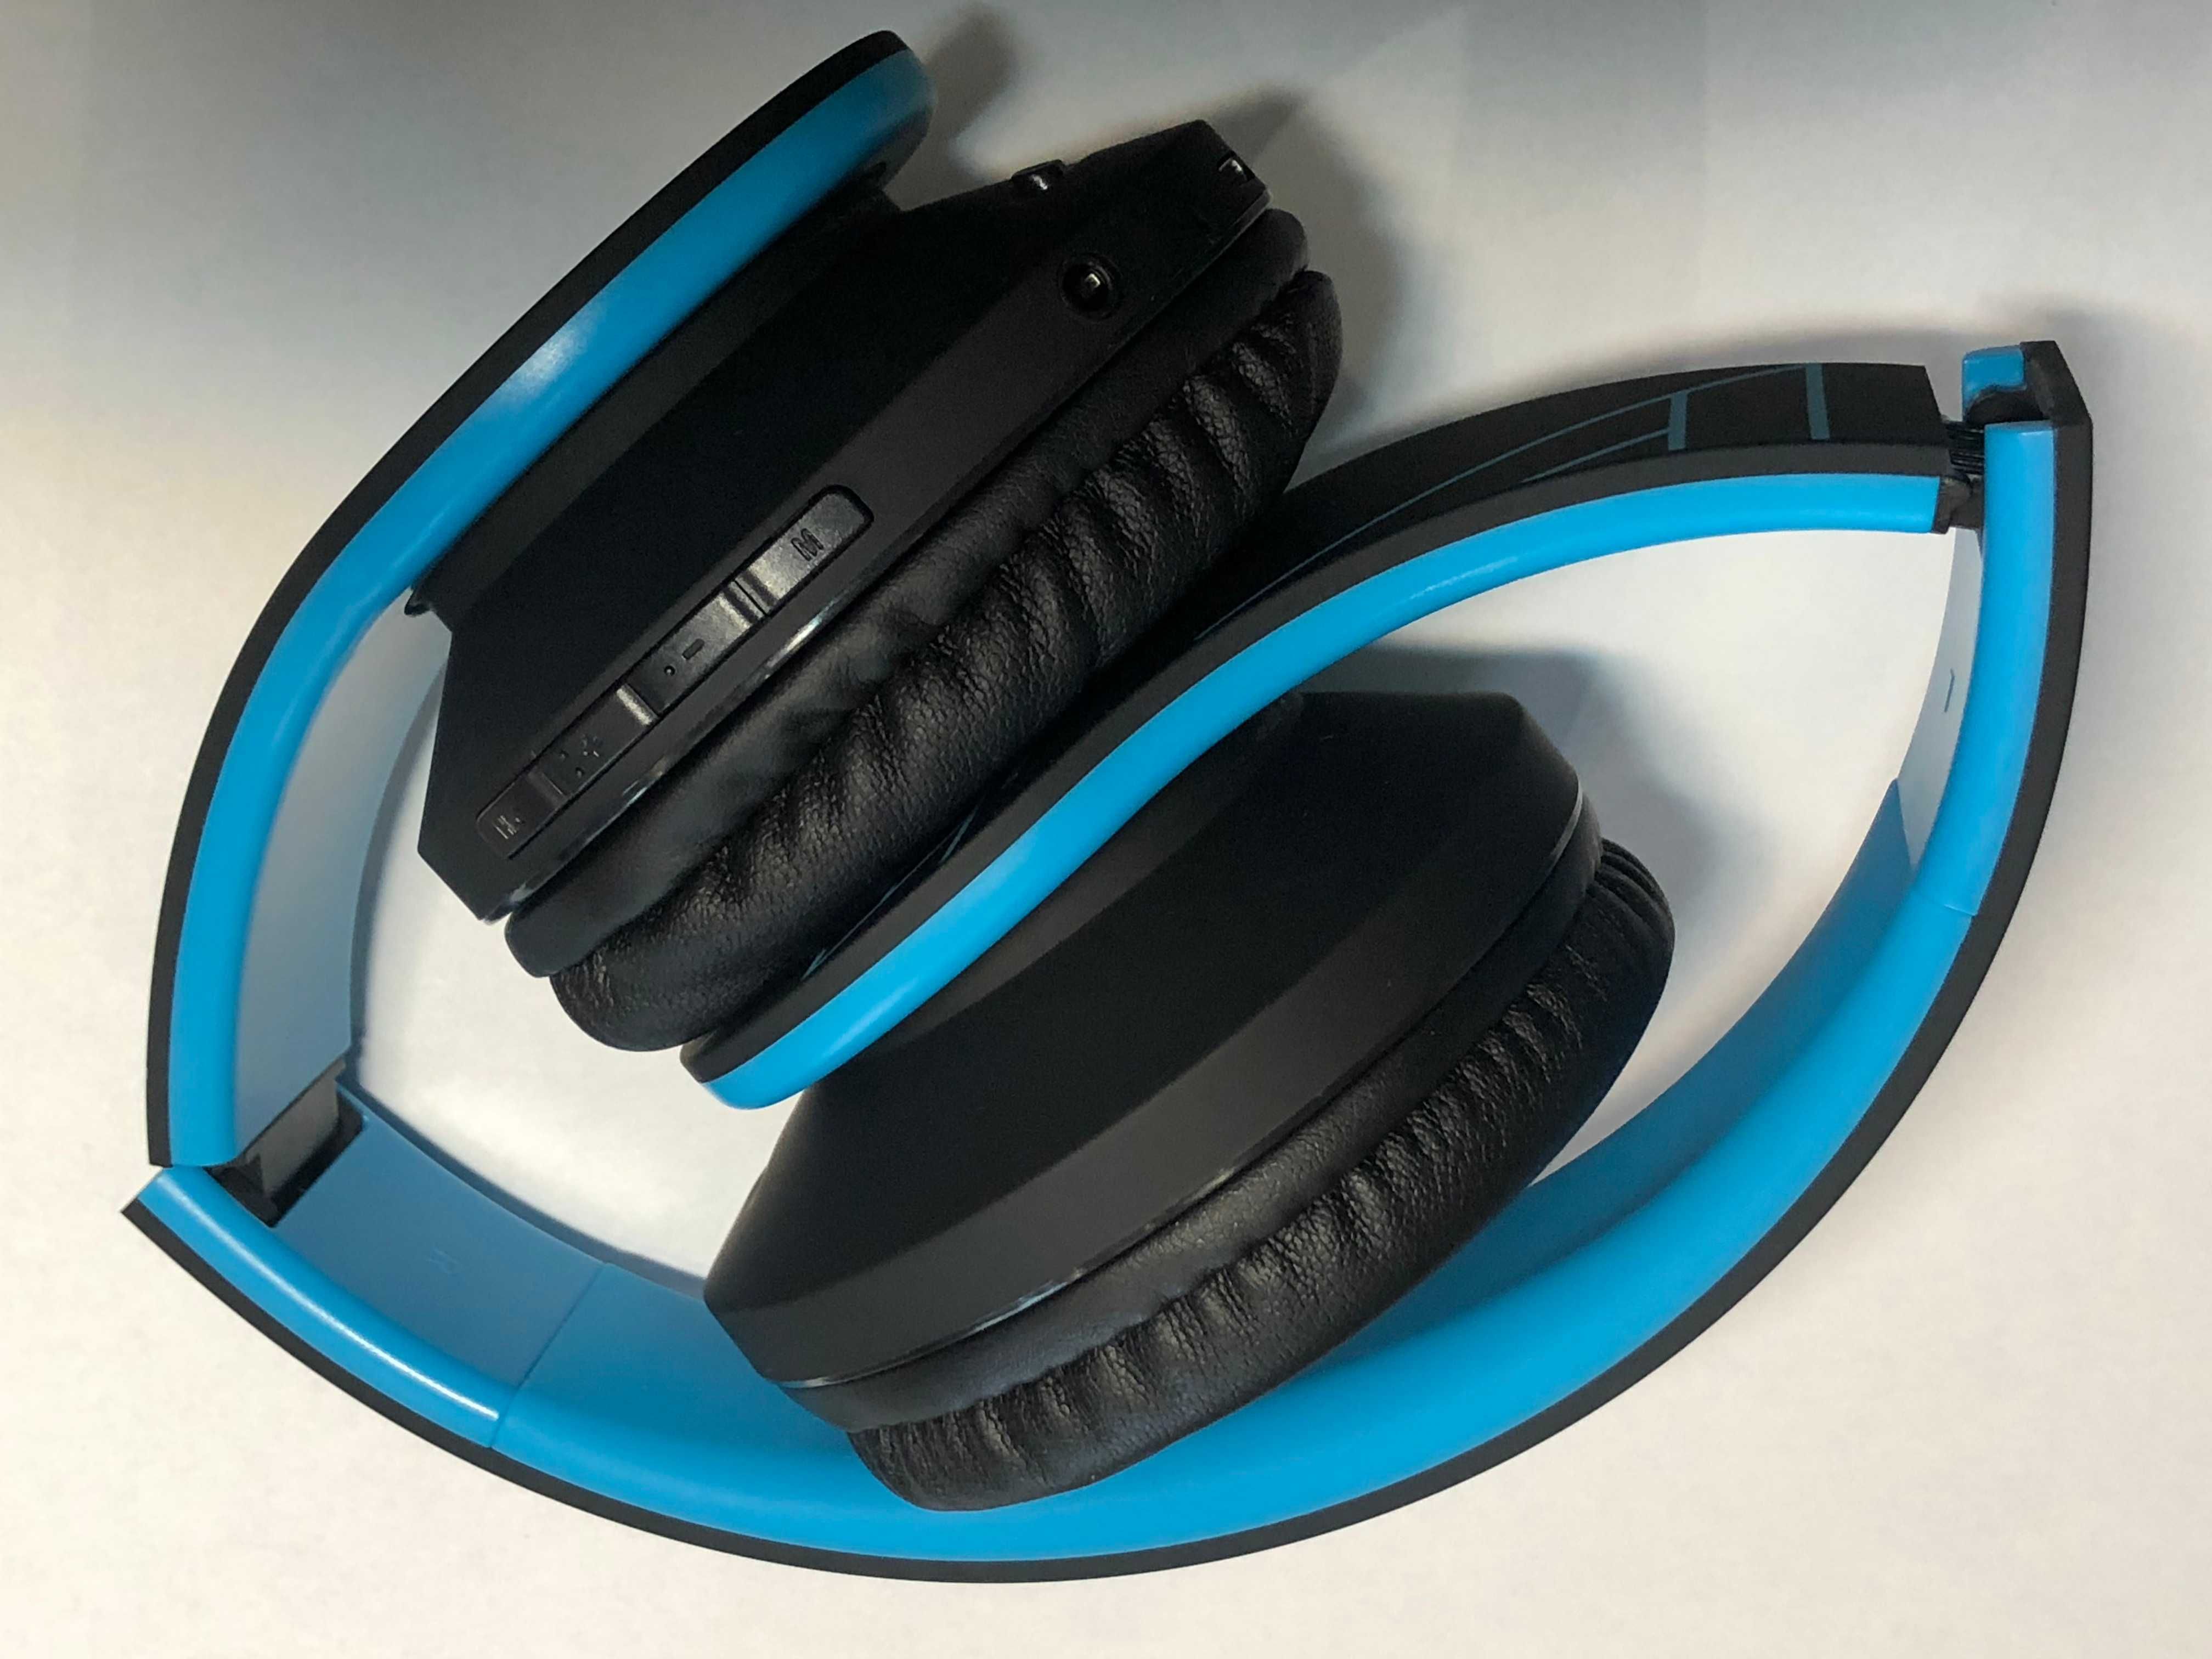 Słuchawki bezprzewodowe nauszne PowerLocus P2 niebieskie